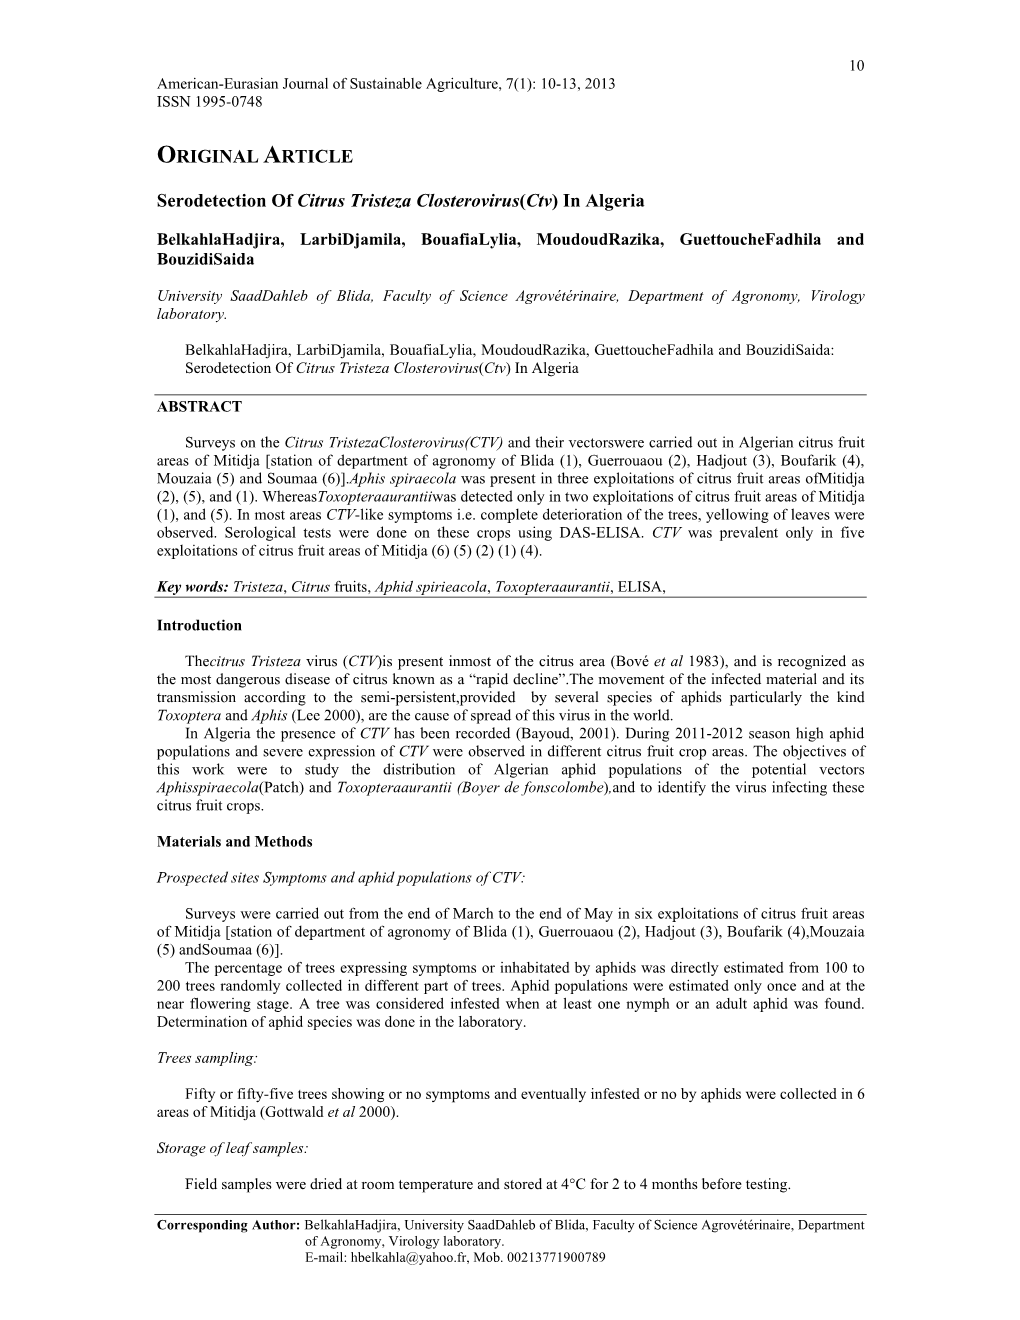 ORIGINAL ARTICLE Serodetection of Citrus Tristeza Closterovirus(Ctv) In